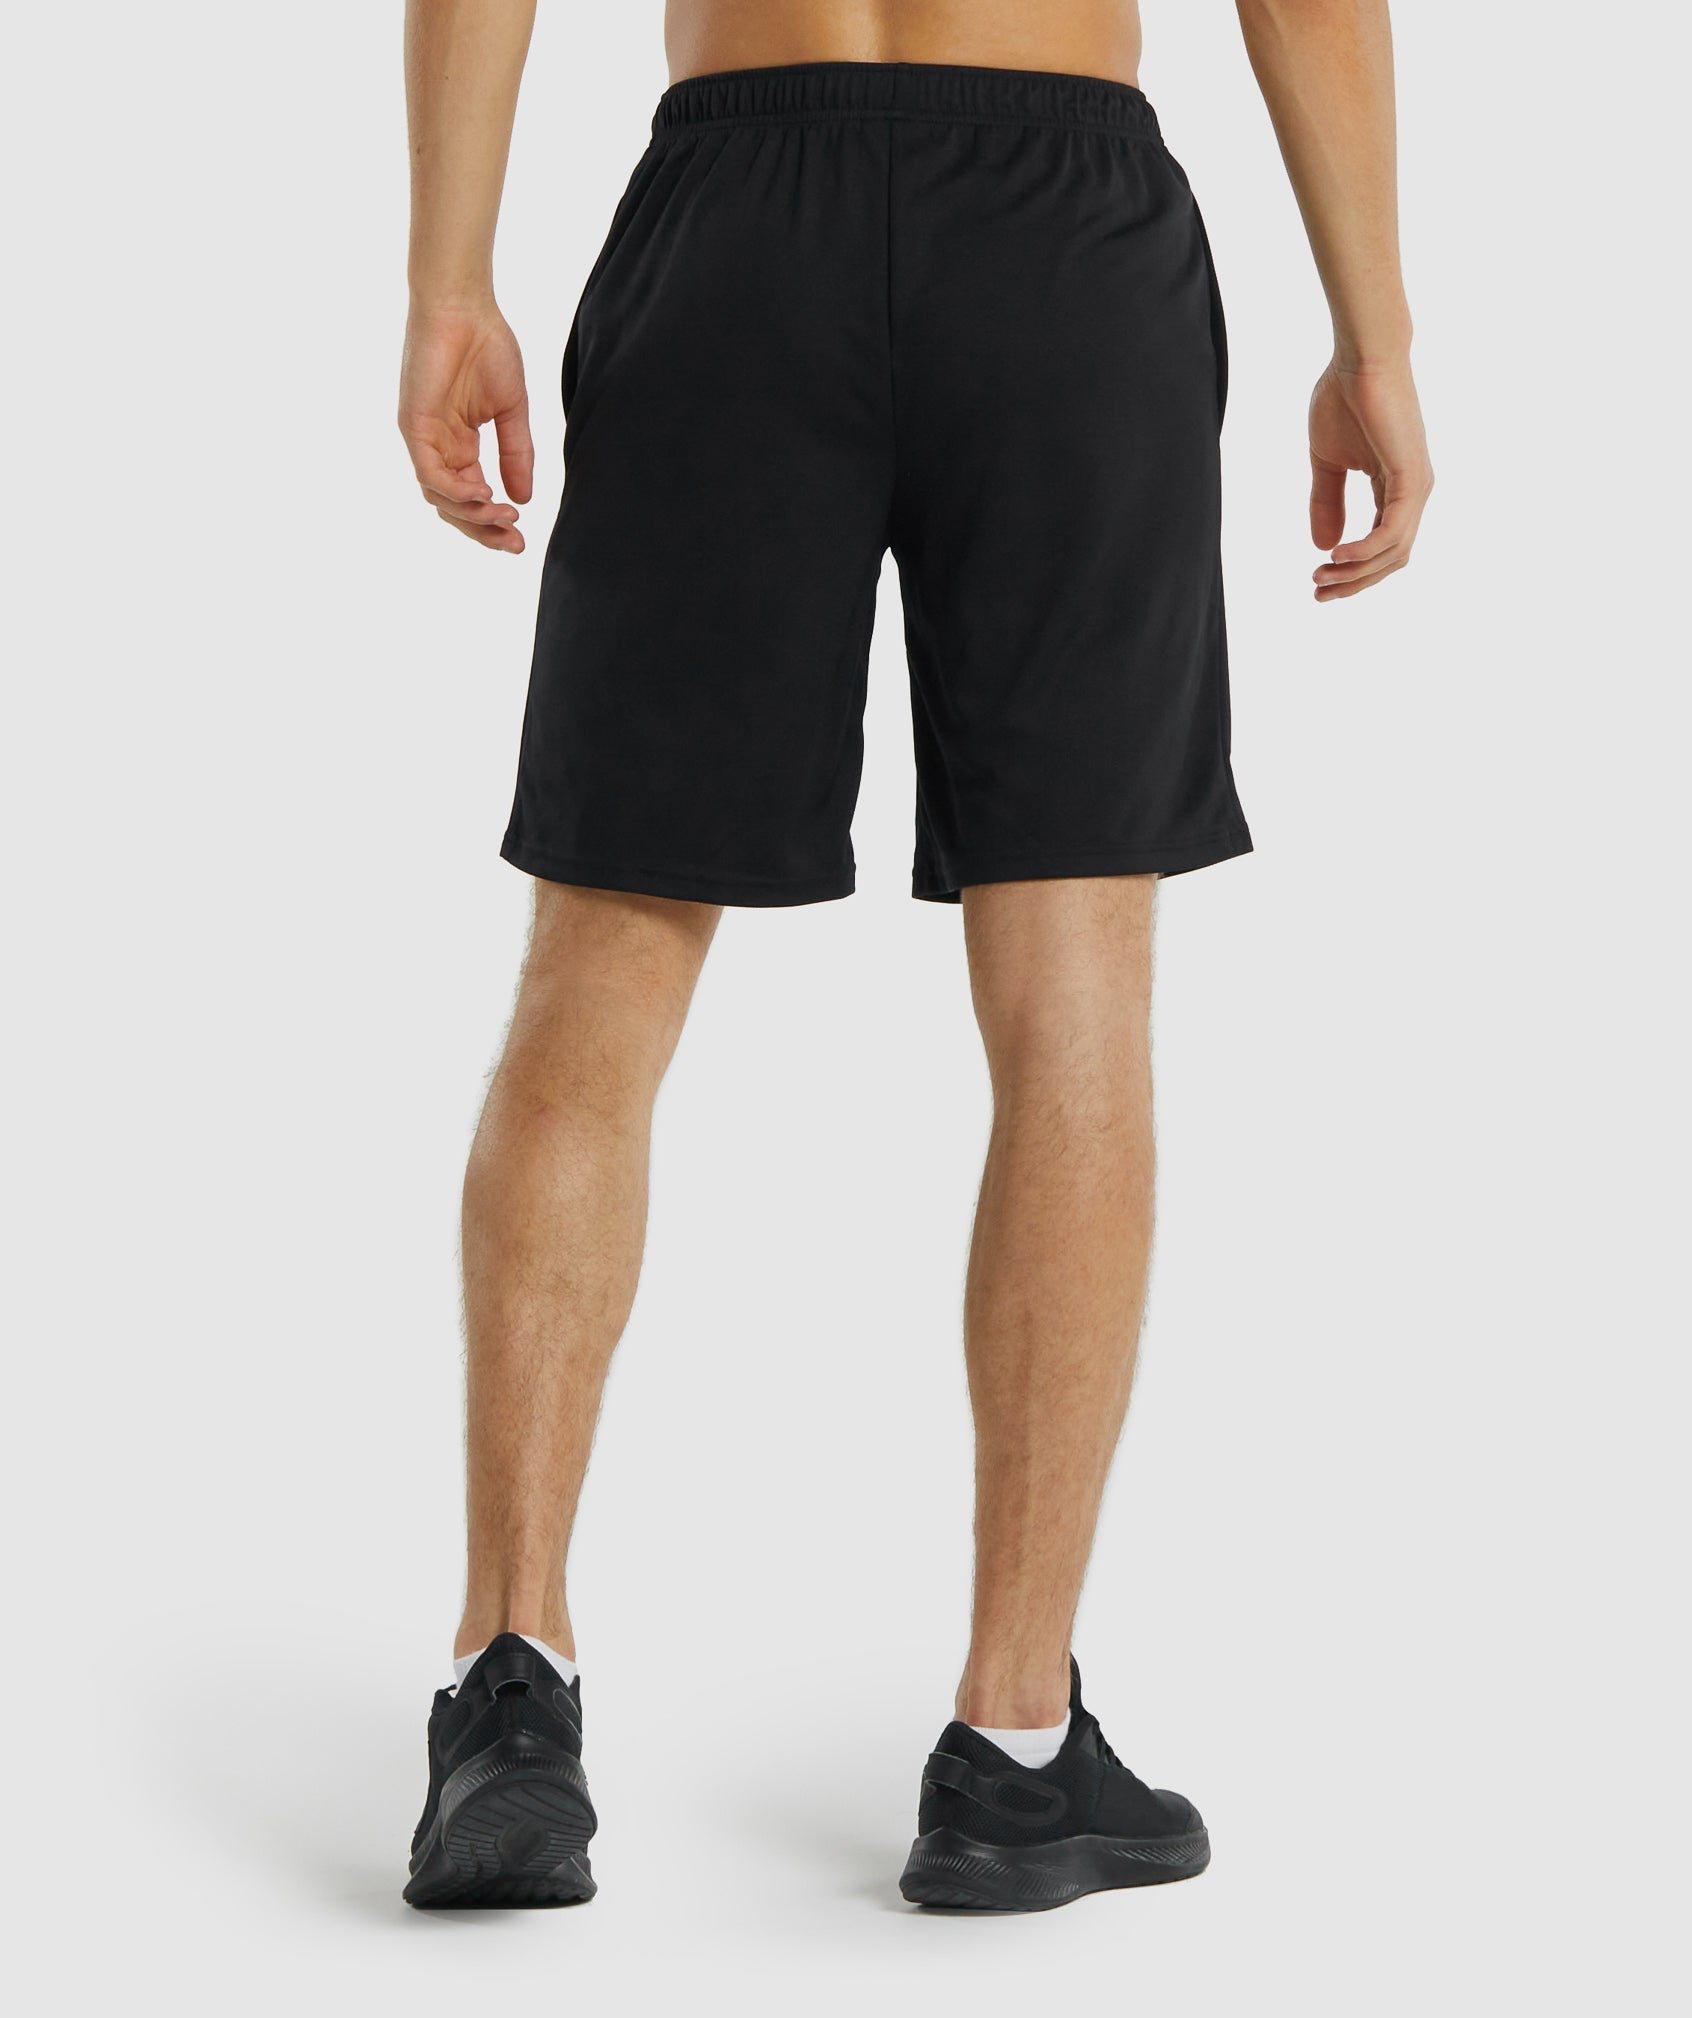 Gymshark Arrival Zip Pocket Shorts - Black